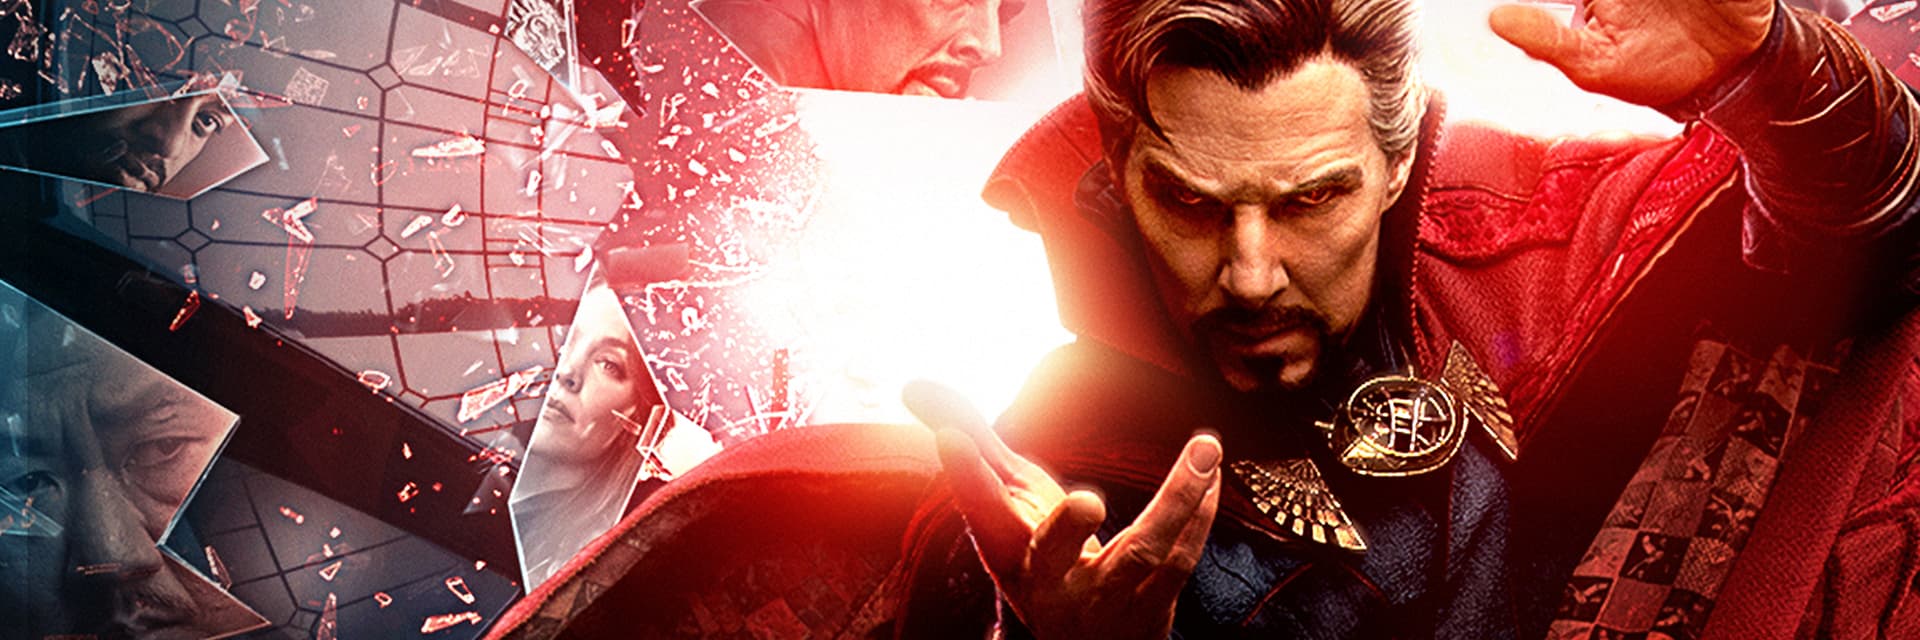 Marvel Studios' Doctor Strange in the Multi-Verse of Madness Movie Poster